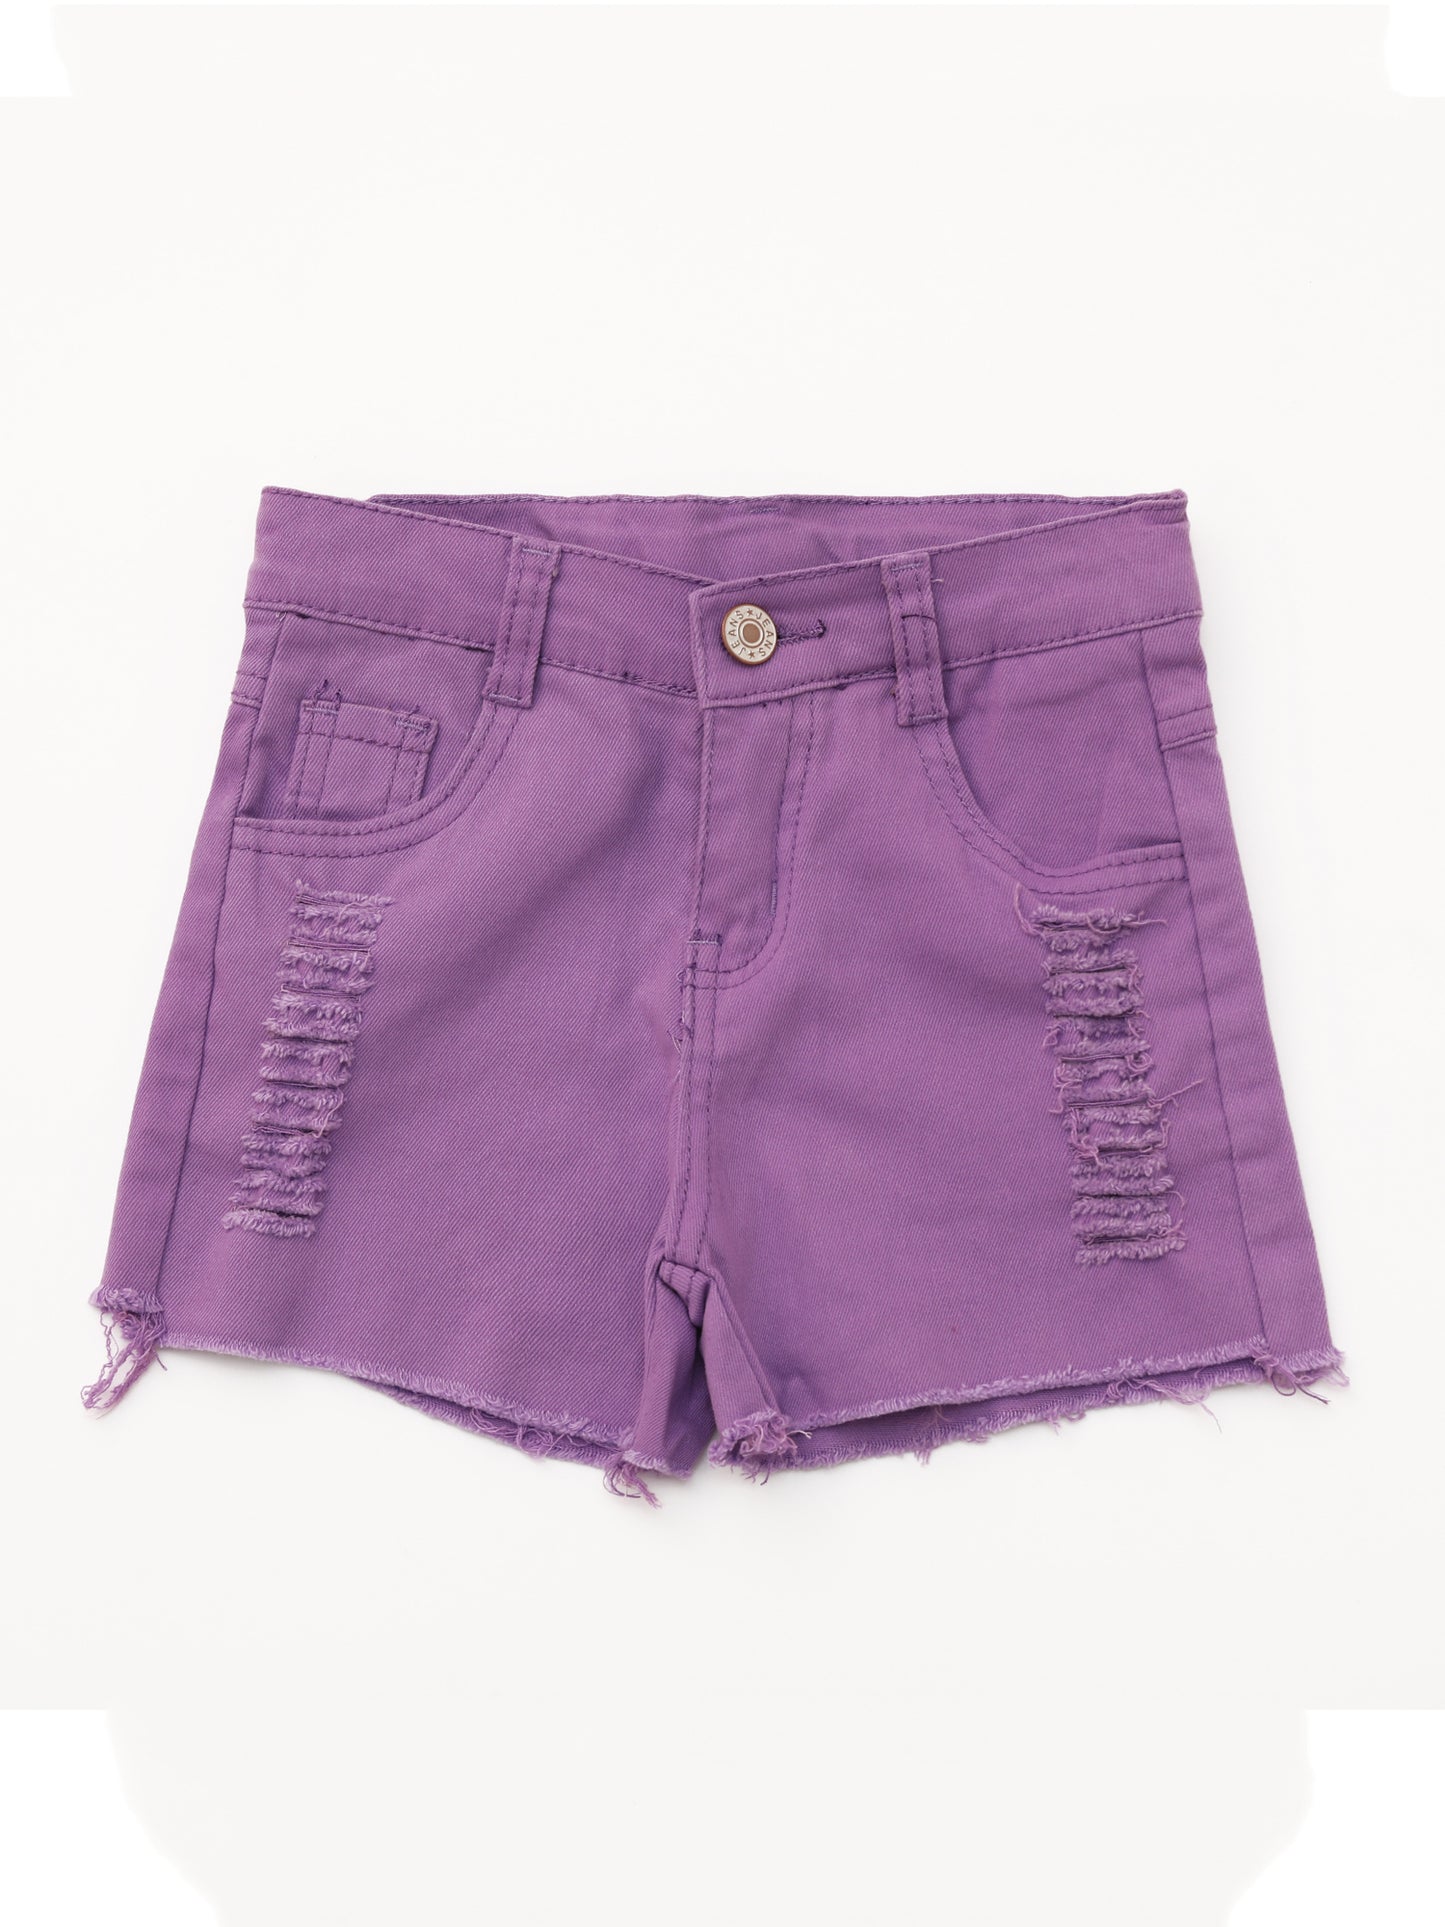 Kids Distressed Purple Denim Shorts